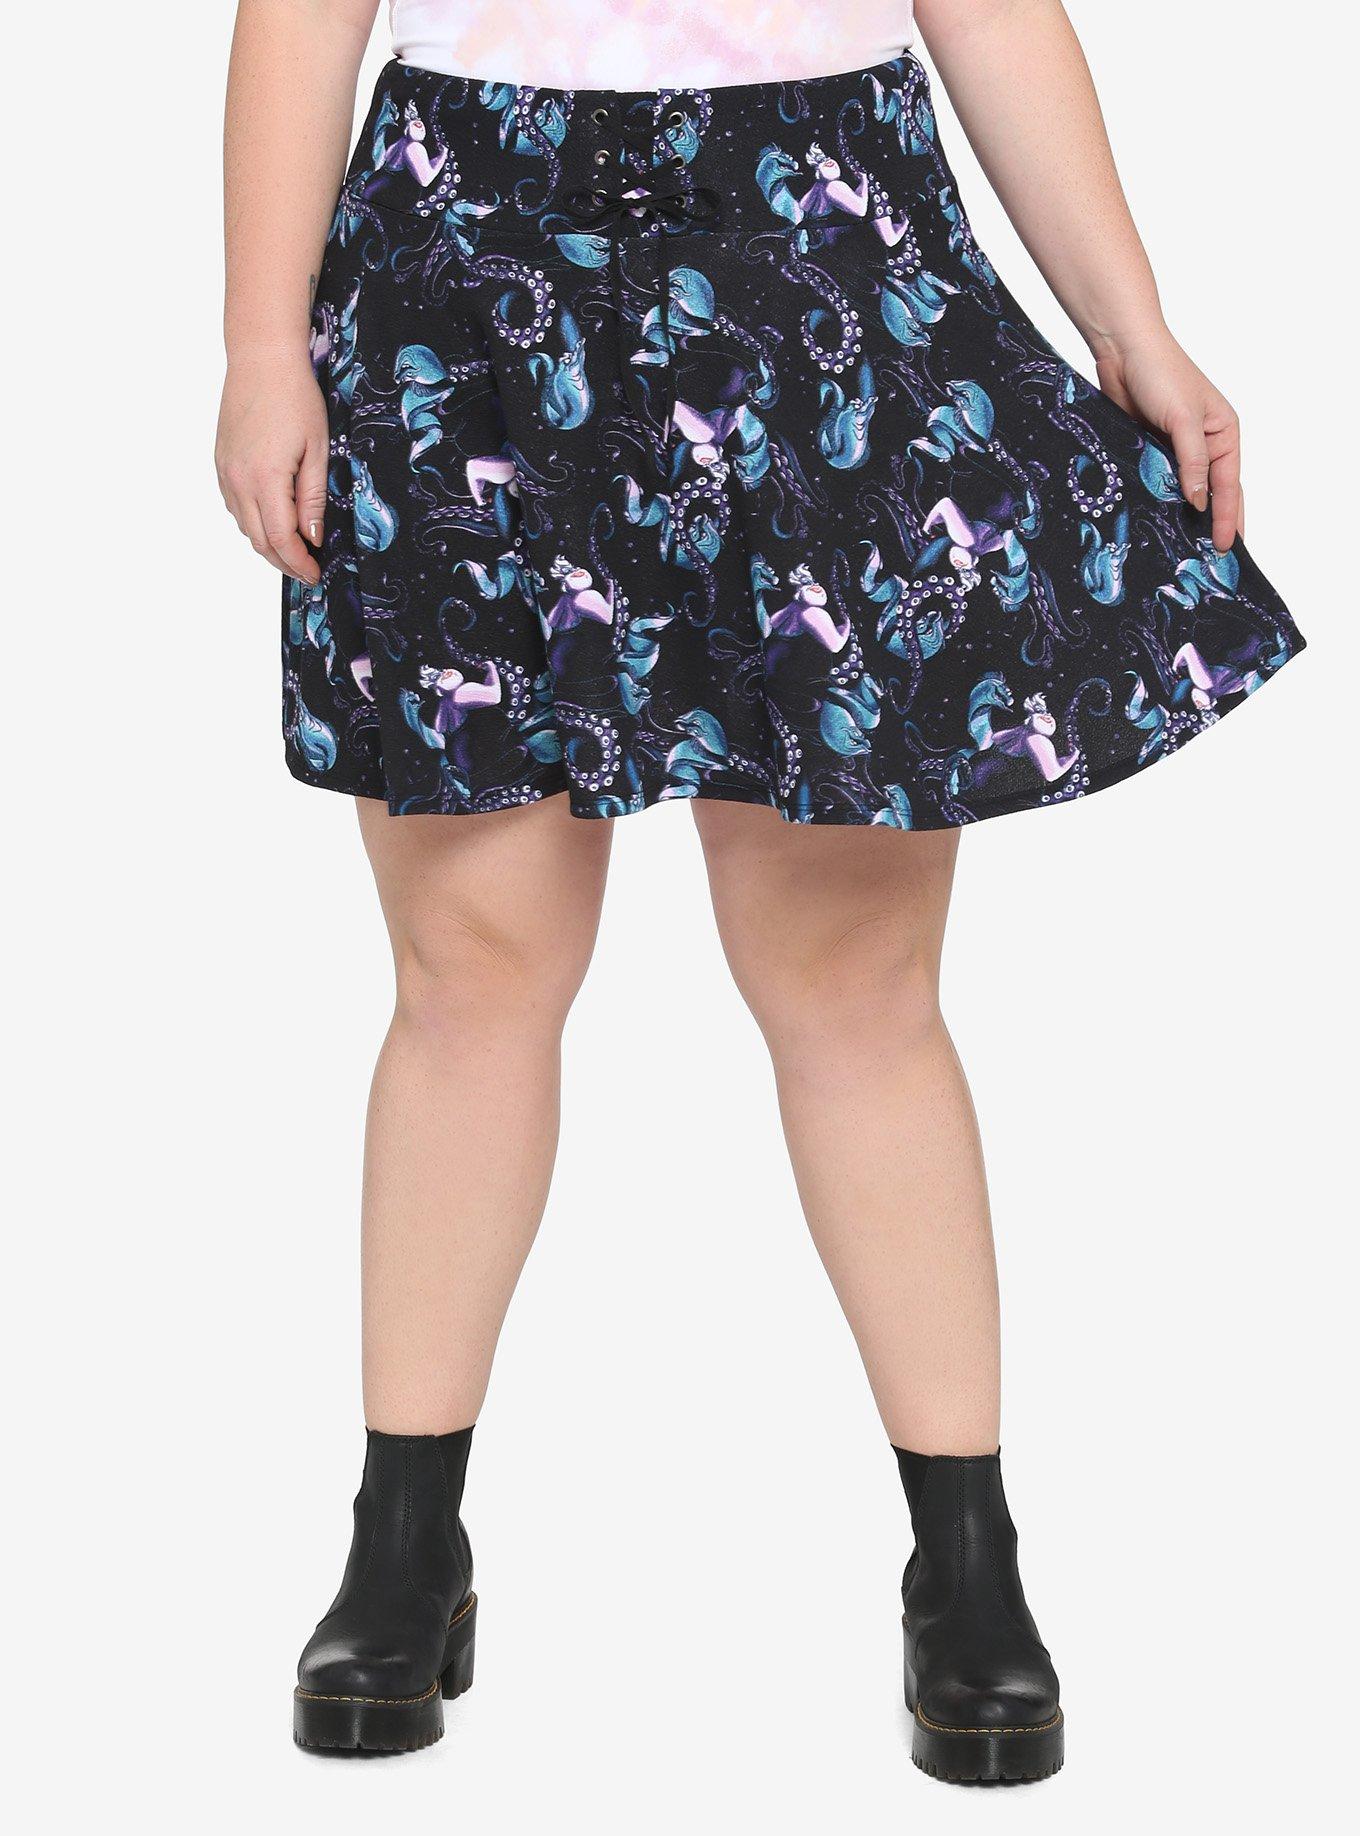 Disney Villains Ursula Lace-Up Skirt Plus Size, MULTI, hi-res